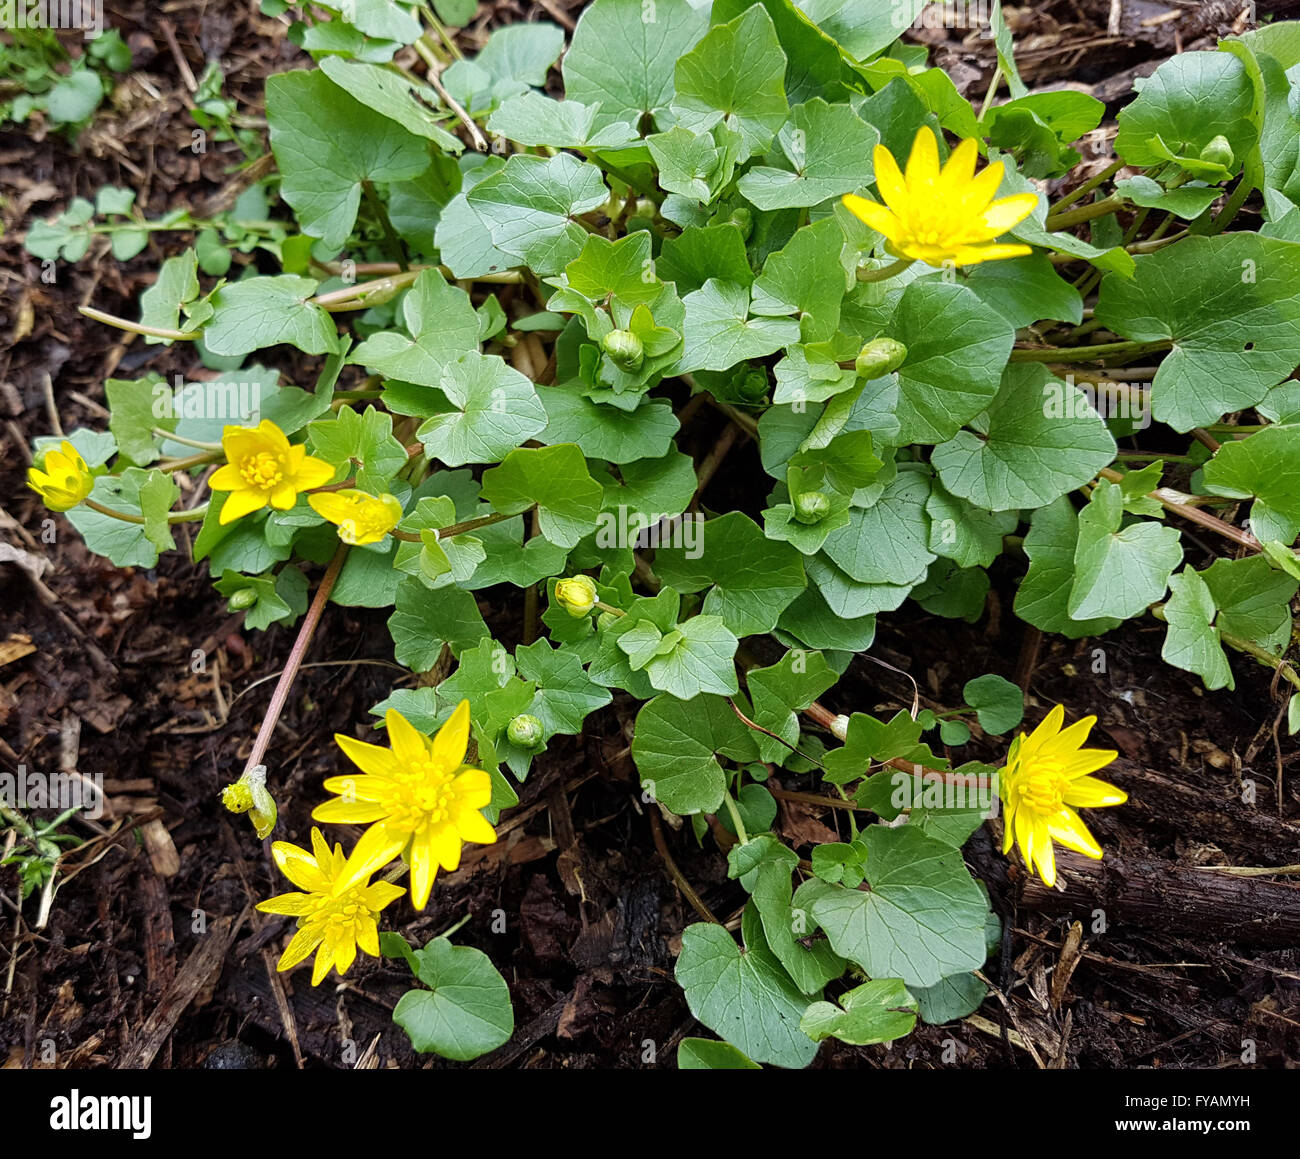 Scharbockskraut Ist eine Heilpflanze und Arzneipflanze, Wildpflanze Stock Photo